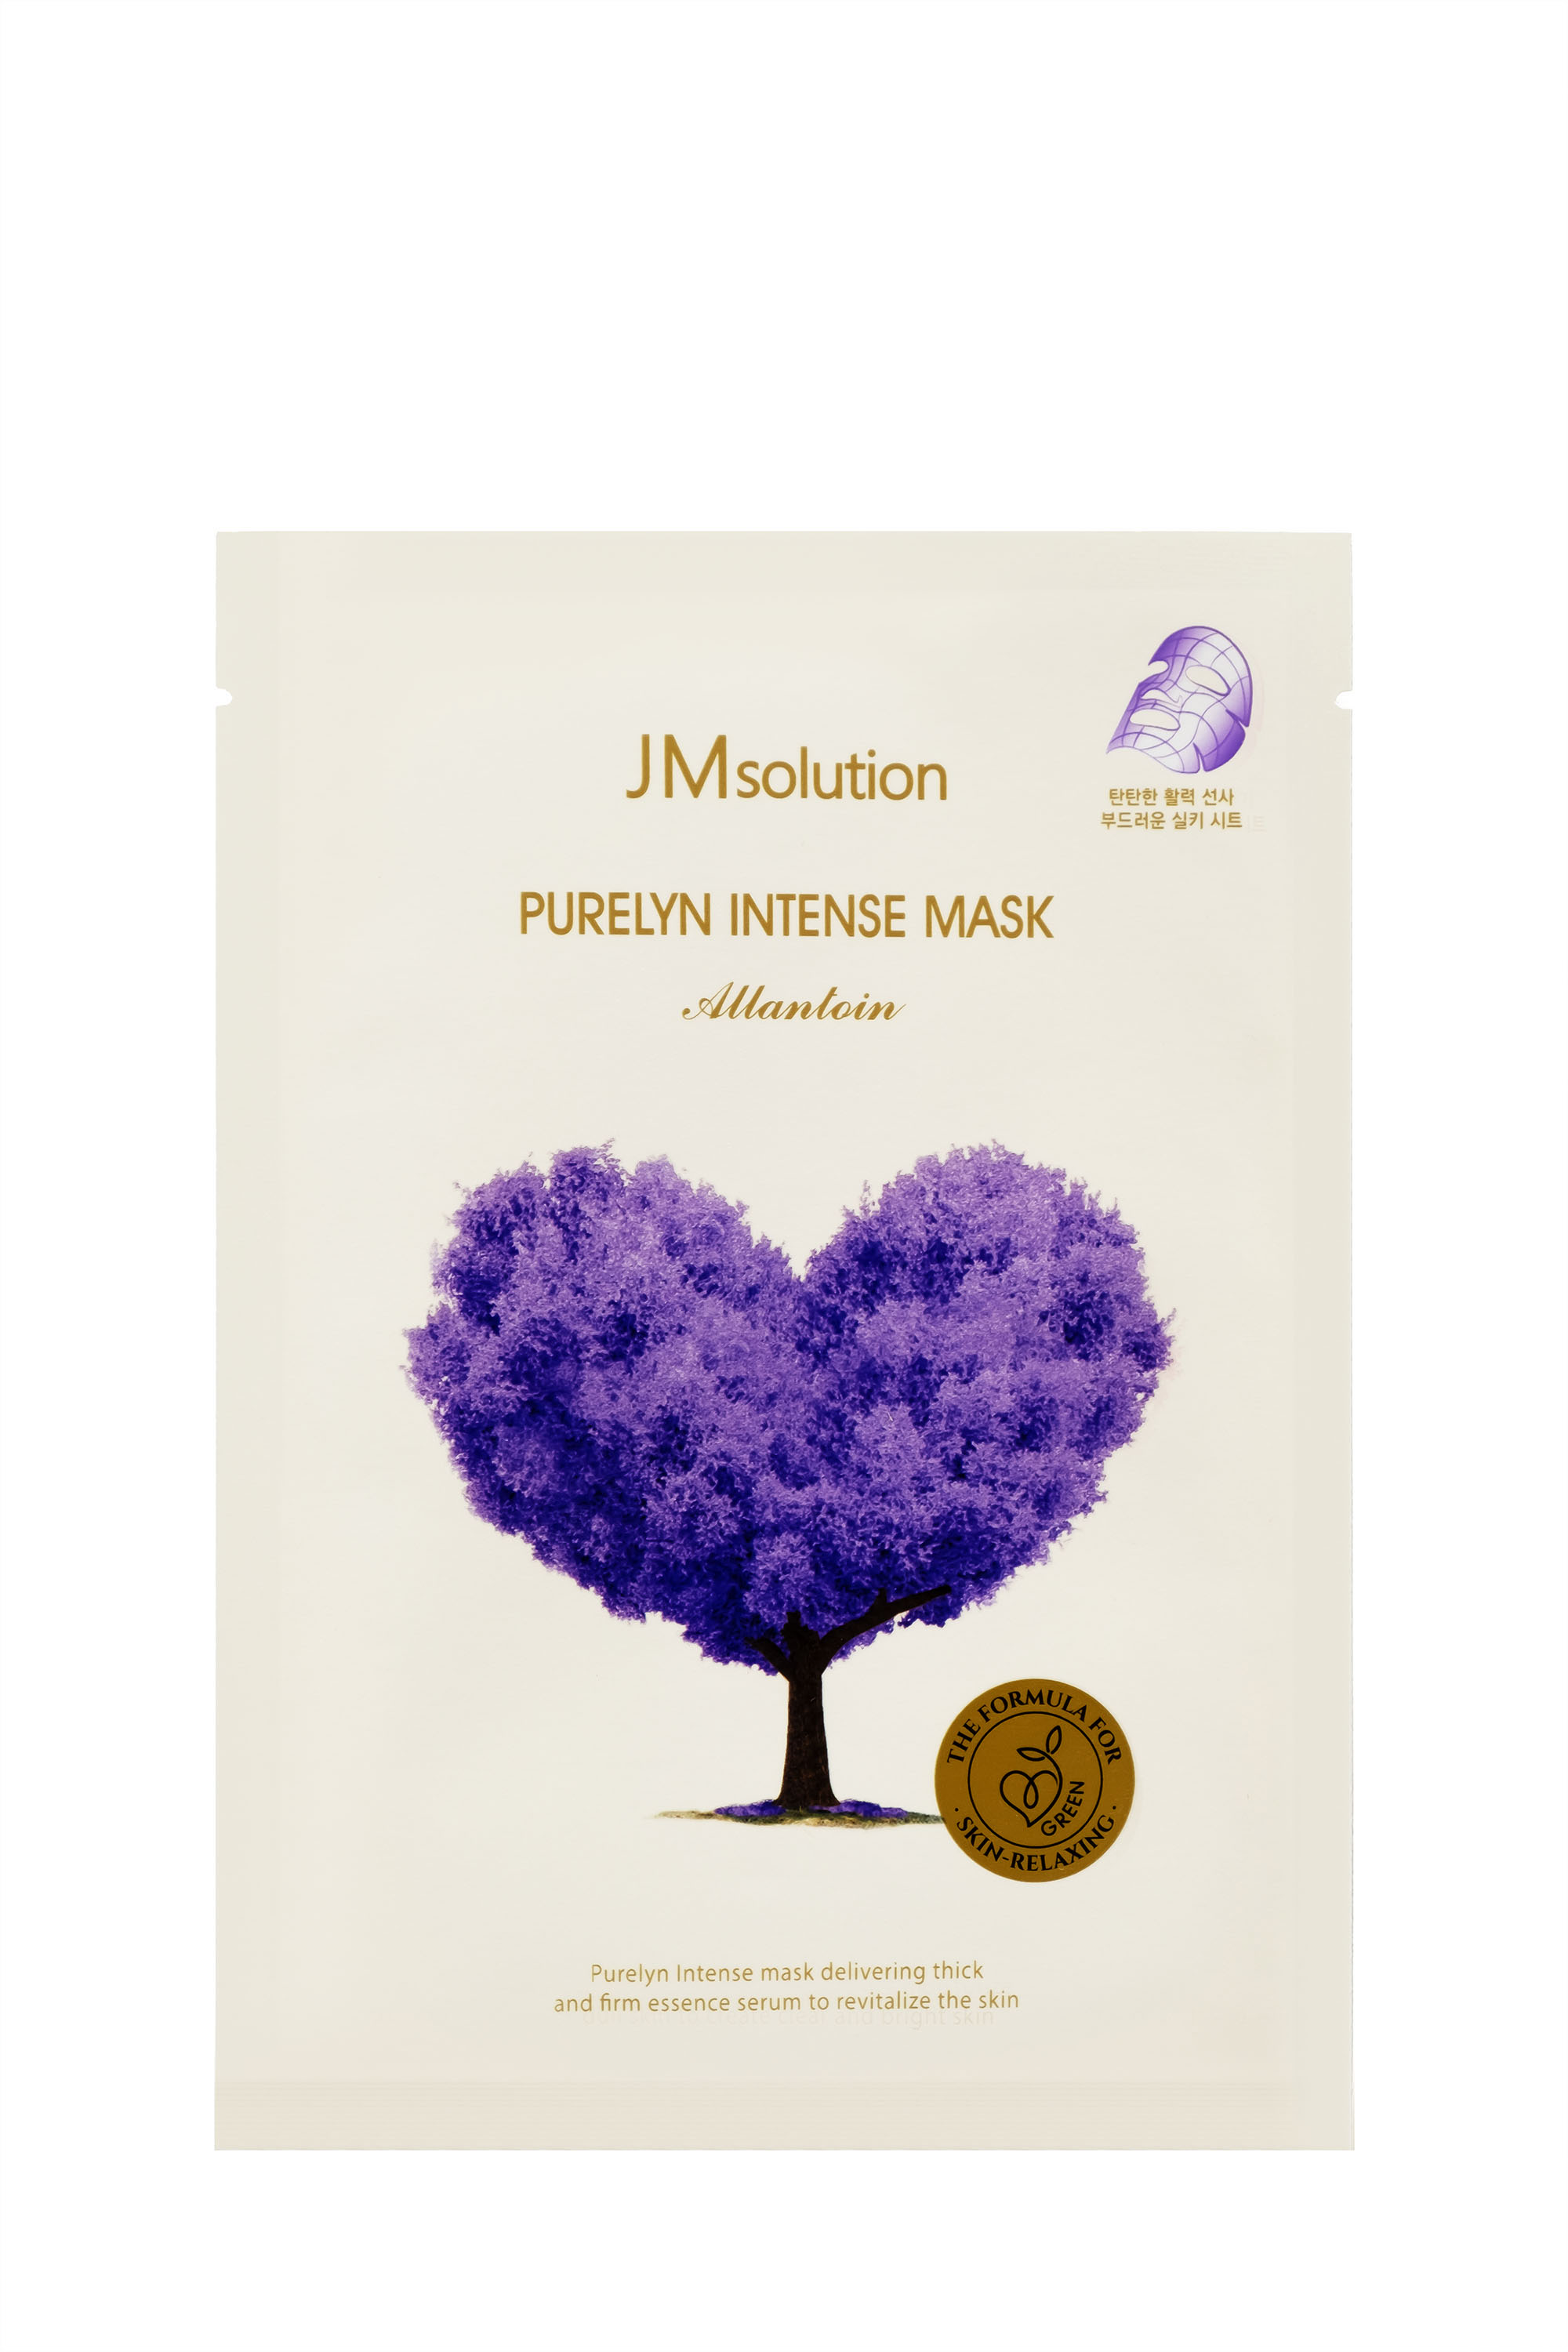  JMsolution Purelyn Intense Mask 30..